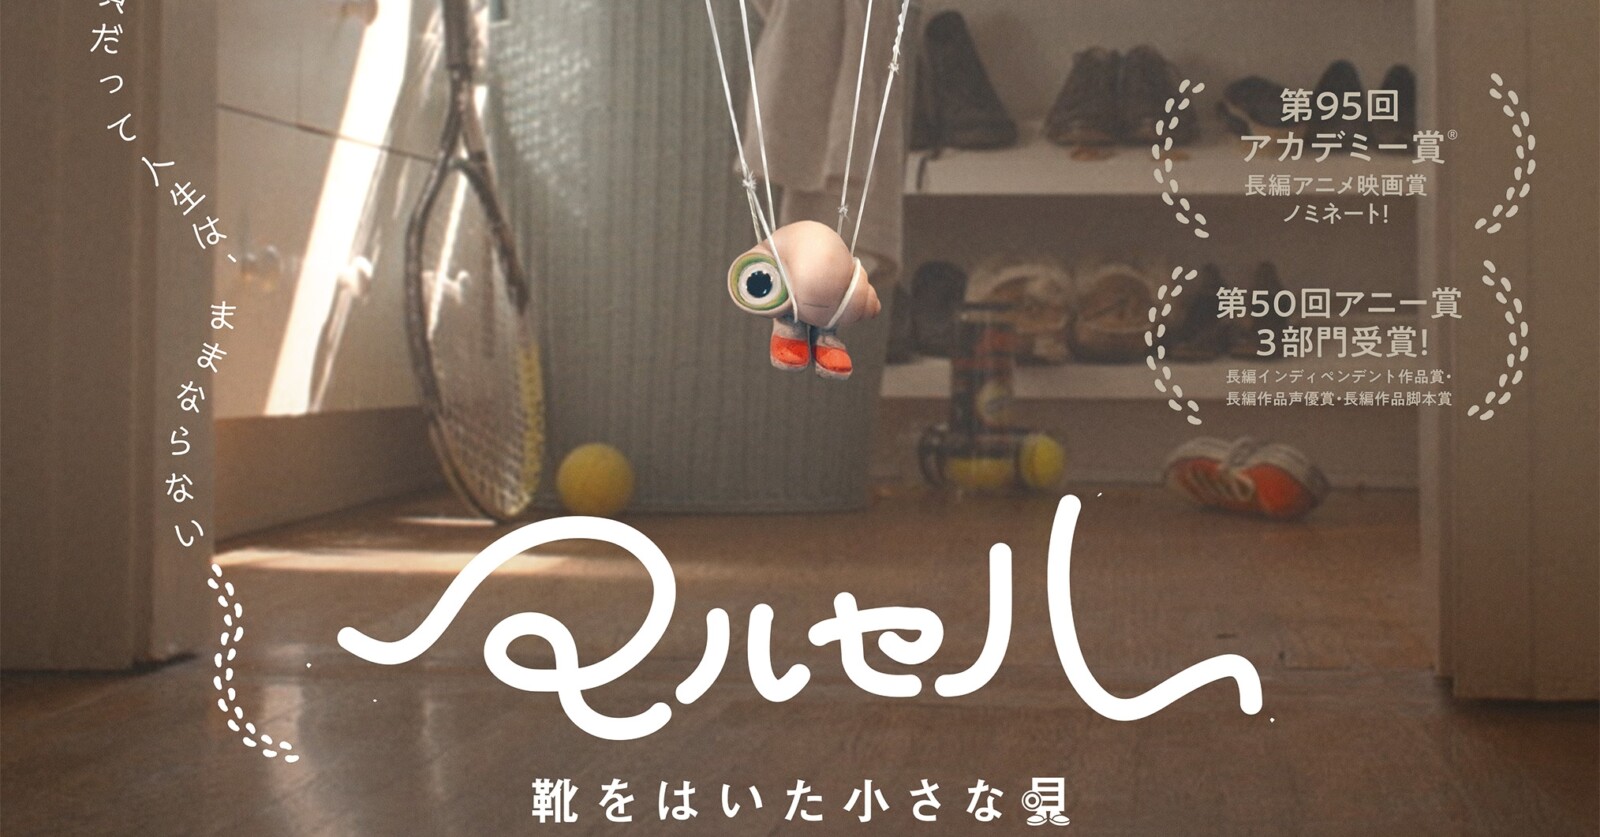 マルセル 靴をはいた小さな貝』6月30日公開決定！日本版予告編 